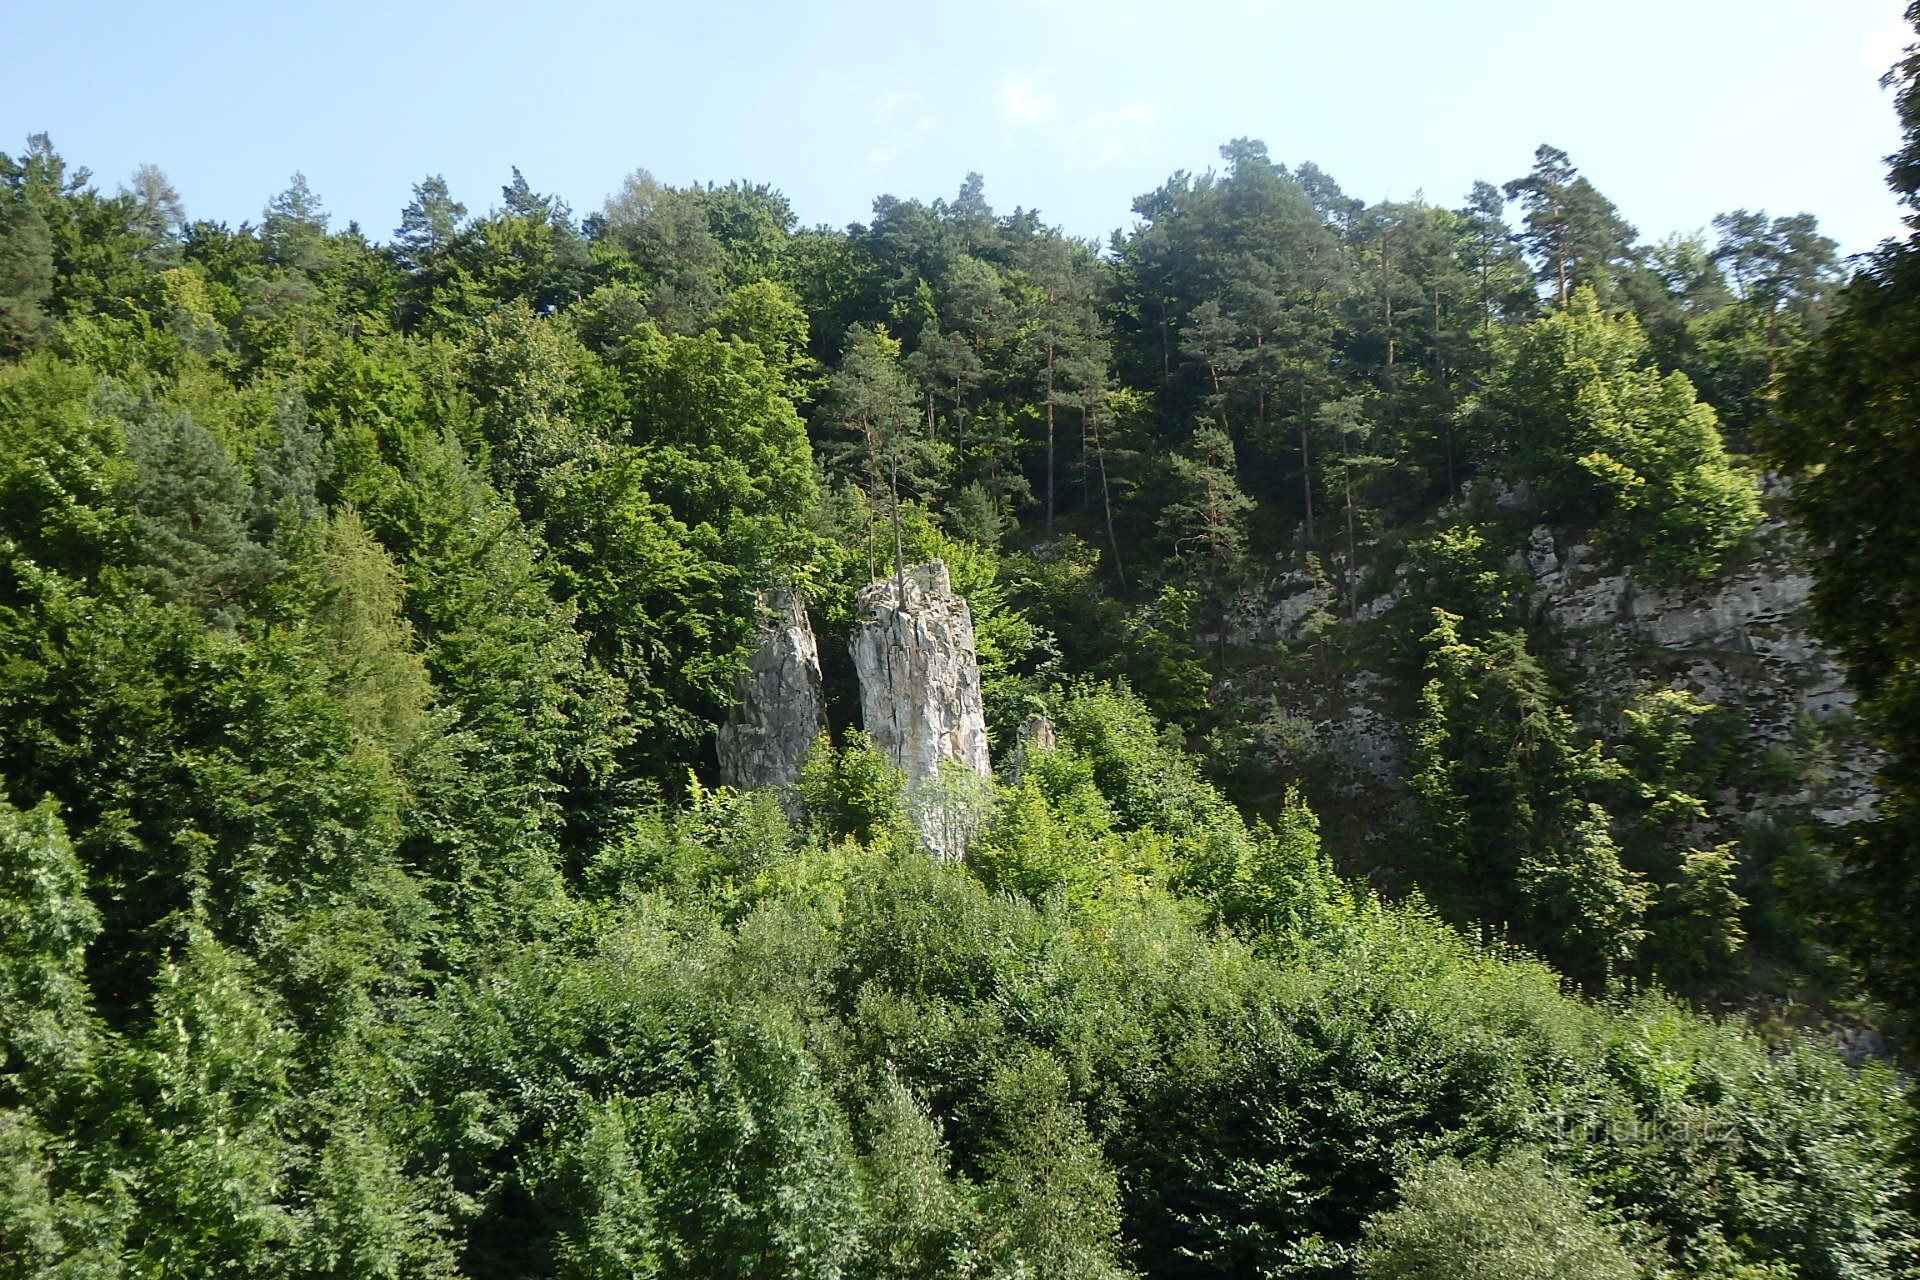 Sloupsko-šošůvské peșteri